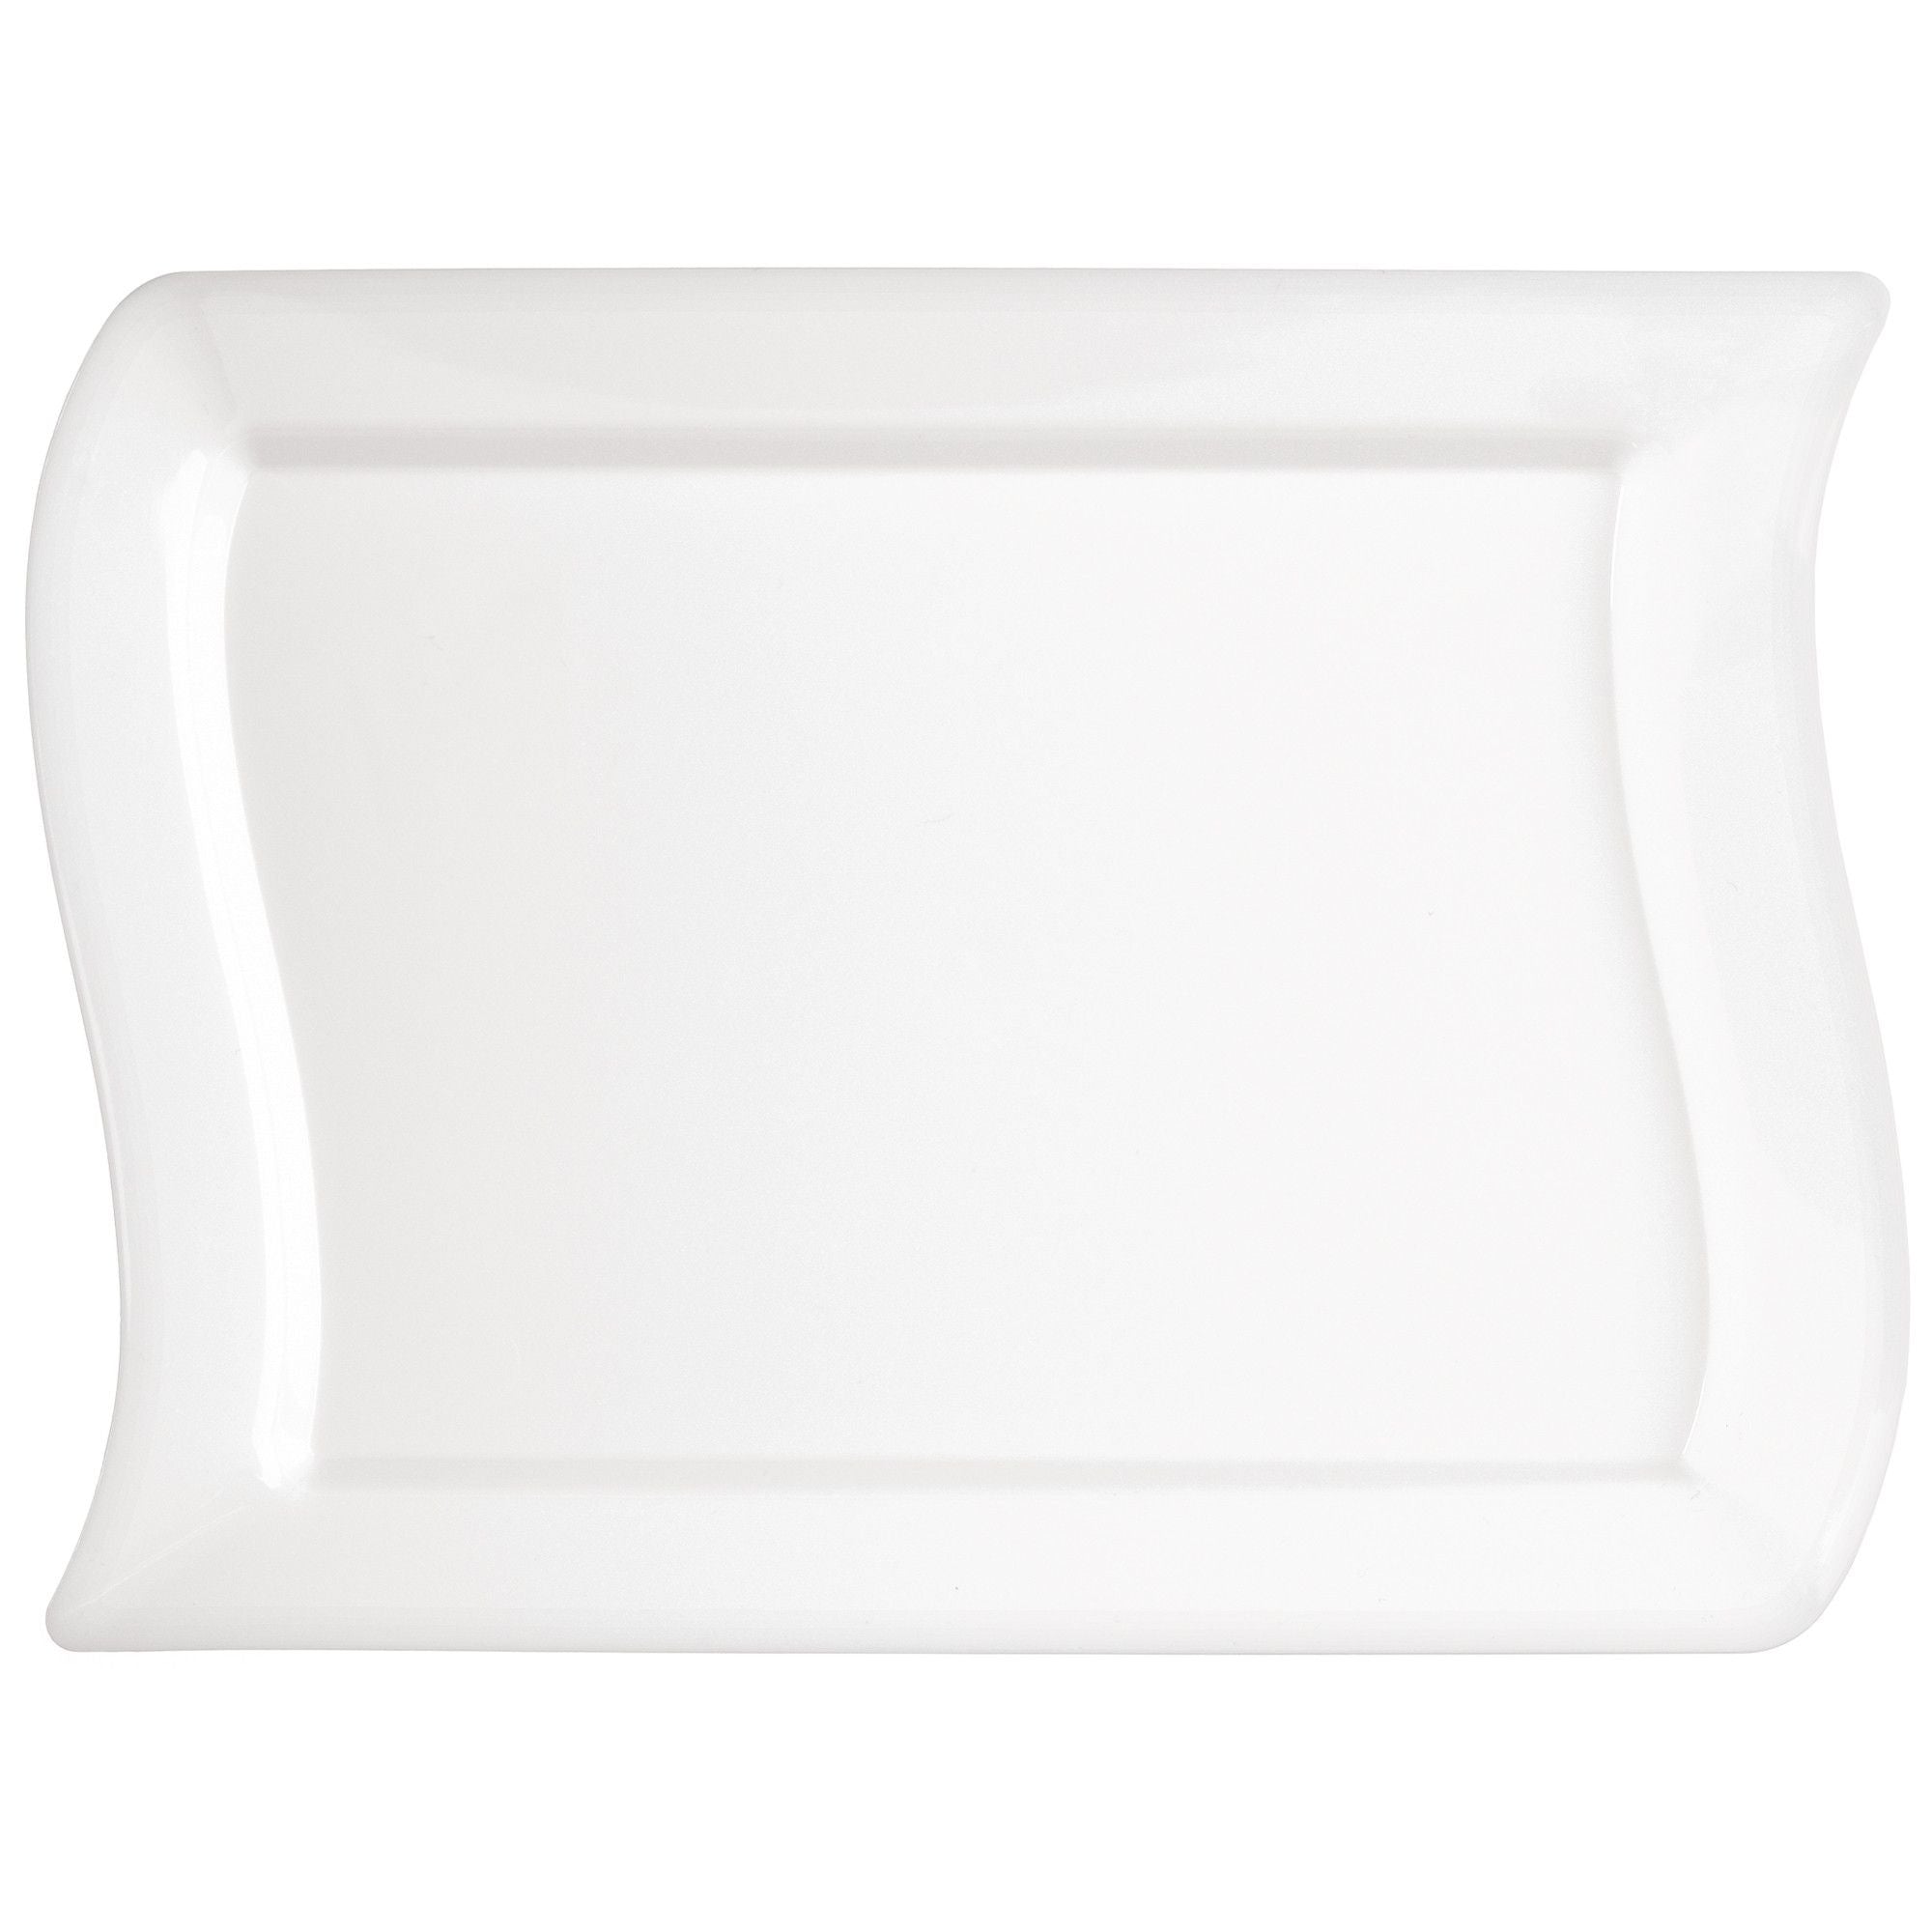 Premium Plastic White Wavy Plates 10ct | Catering